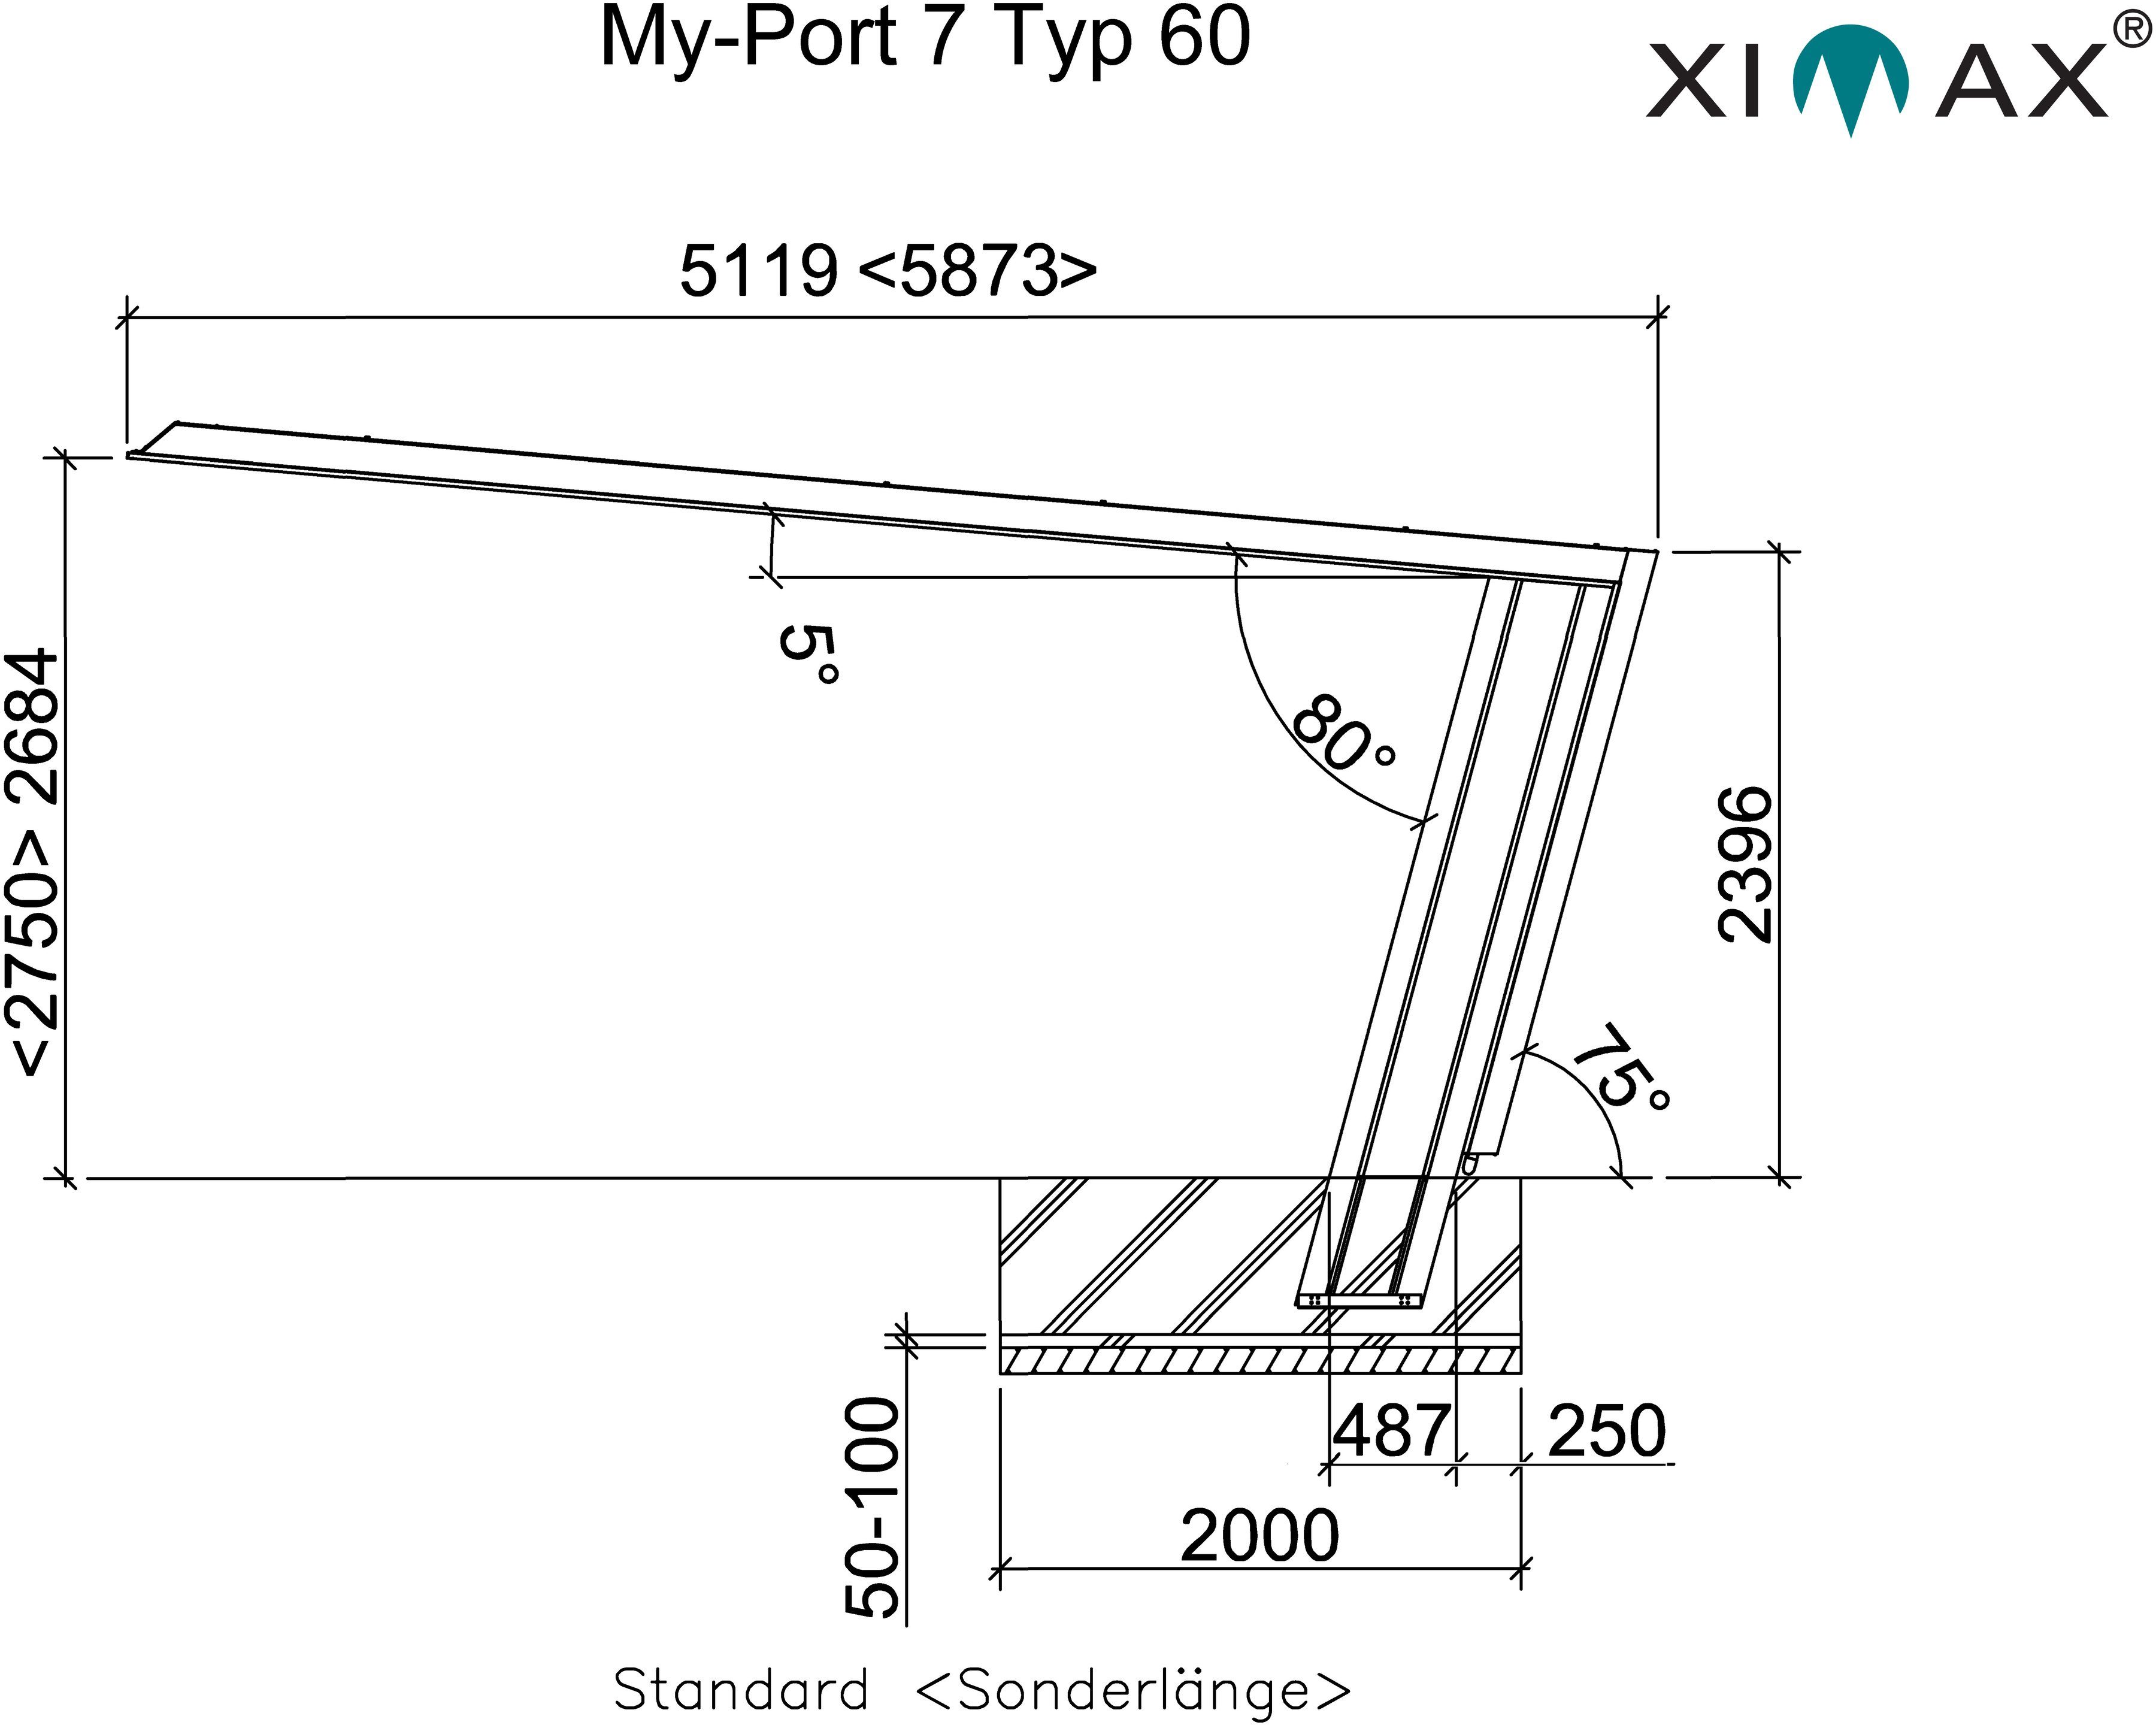 BxT: My-Port Typ Einzelcarport 2751 269x512 cm, Standard, Ximax Typ 60 Einfahrtshöhe, Edelstahl-Look/schwarz 220 cm 7 Aluminium,